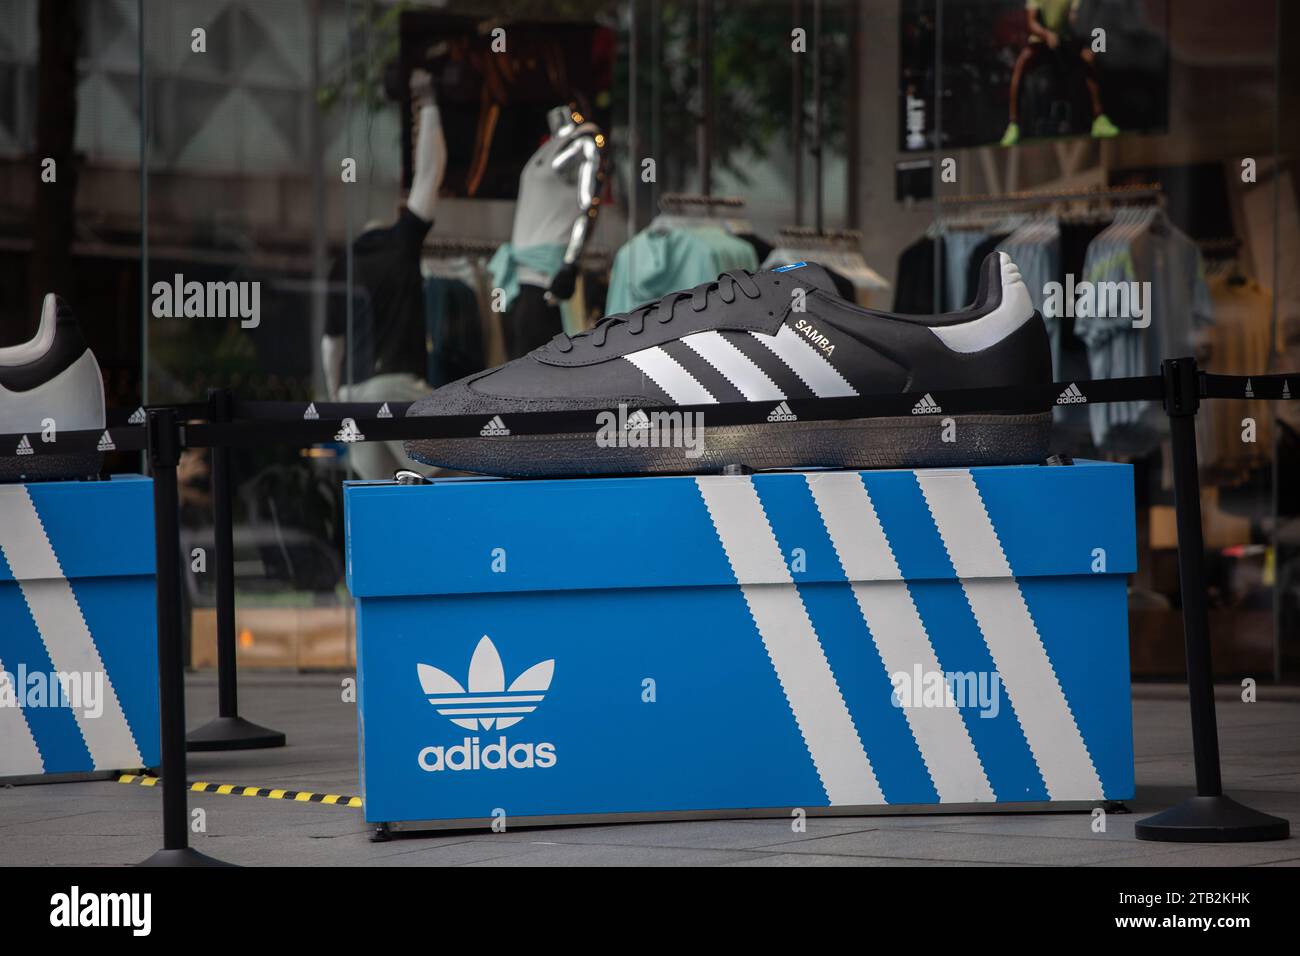 Adidas suchte nach Samba-Schuhen-Pop-up-Display vor dem Adidas Brand Centre an der Orchard Road, Singapur. Stockfoto